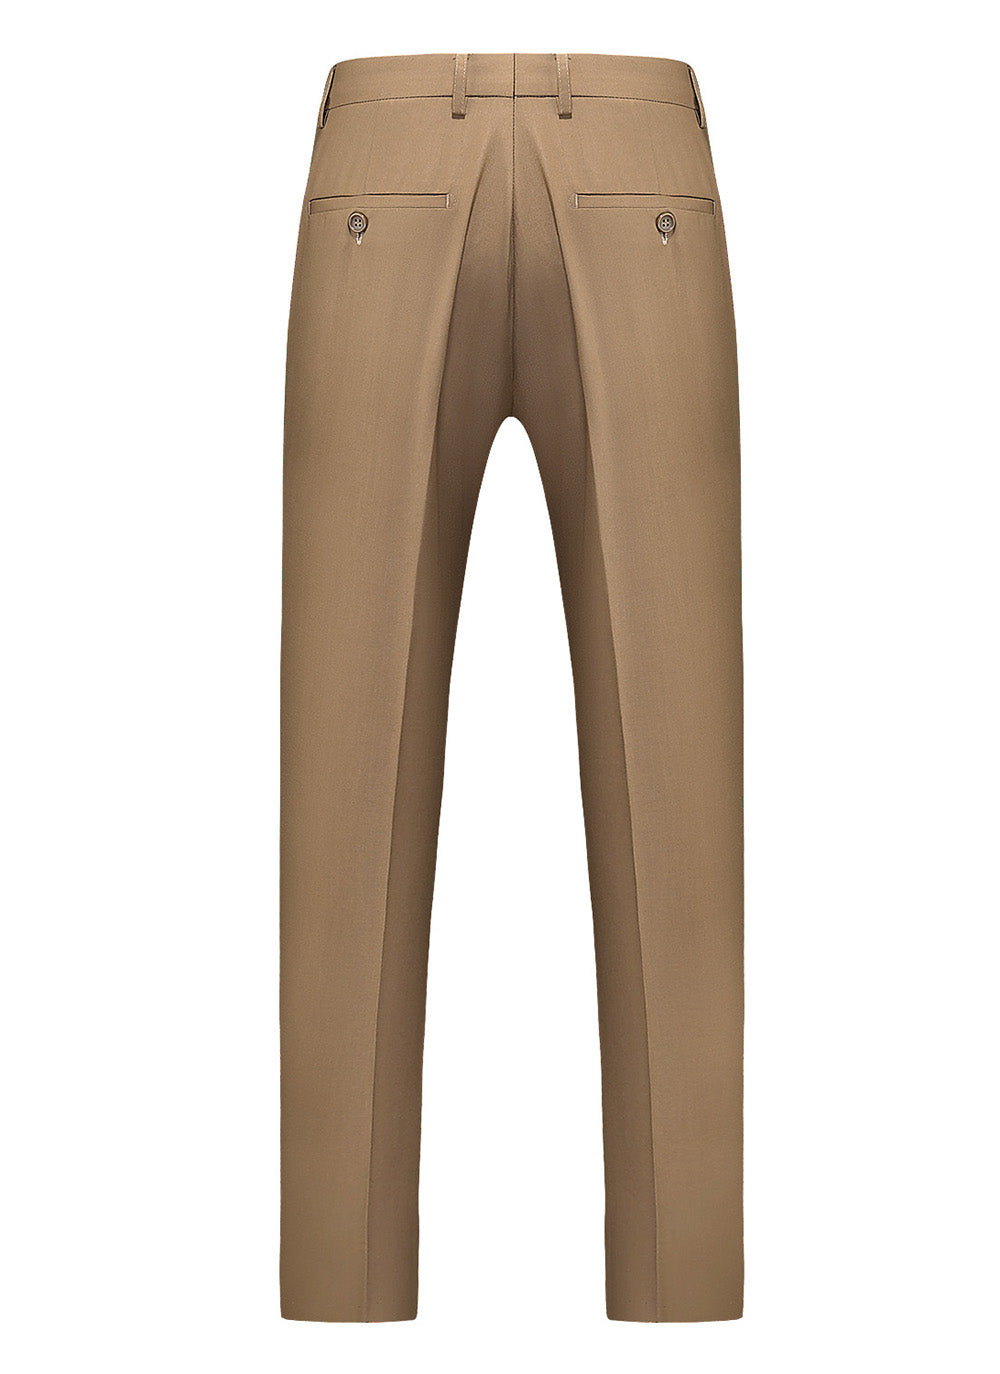 Mens Slim Fit Plain Flat Front Pants Fashion 5 Solid Color Trousers